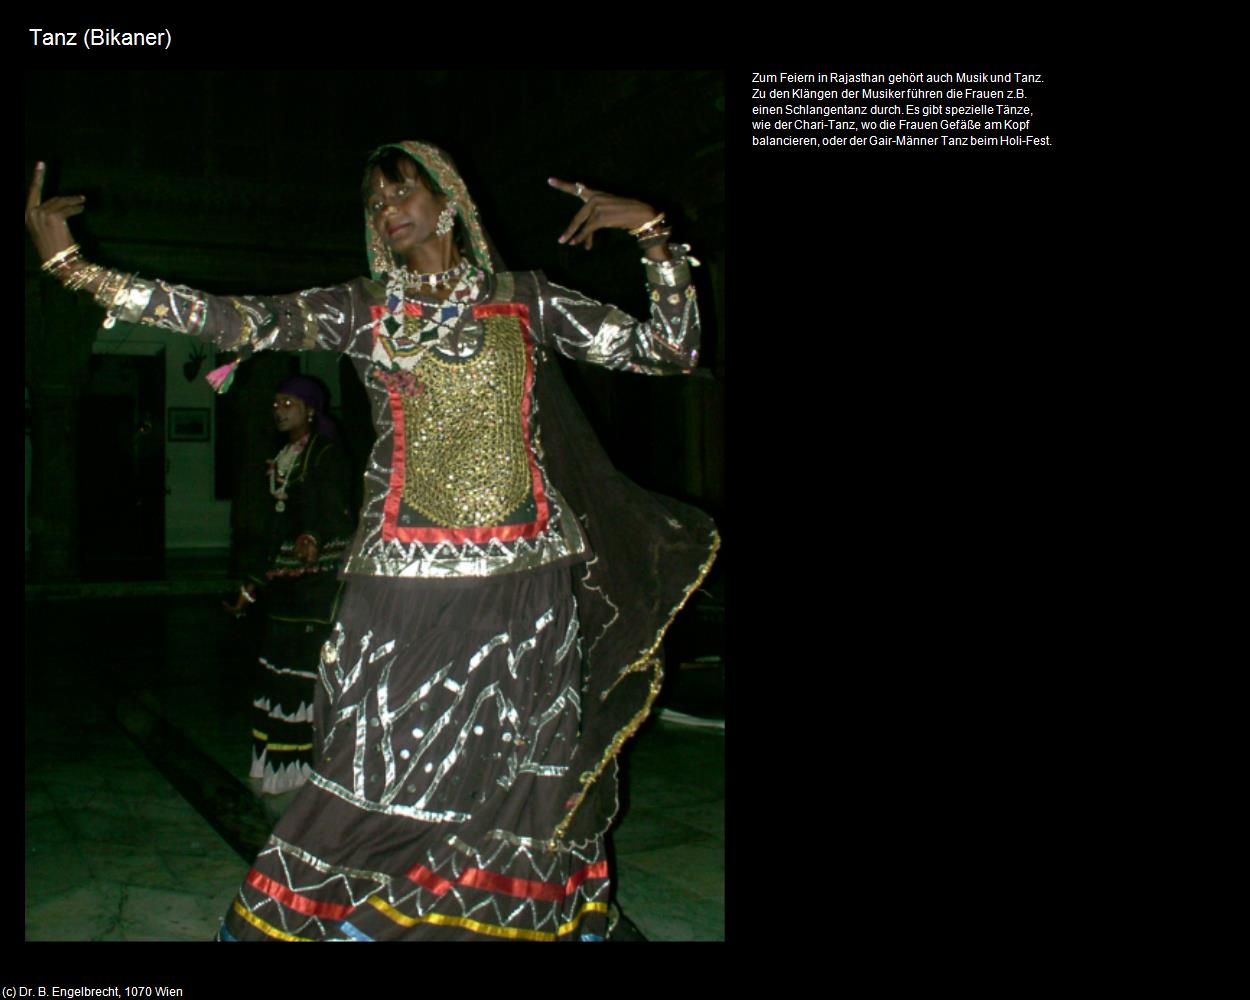 Tanz (Bikaner) in Rajasthan - das Land der Könige